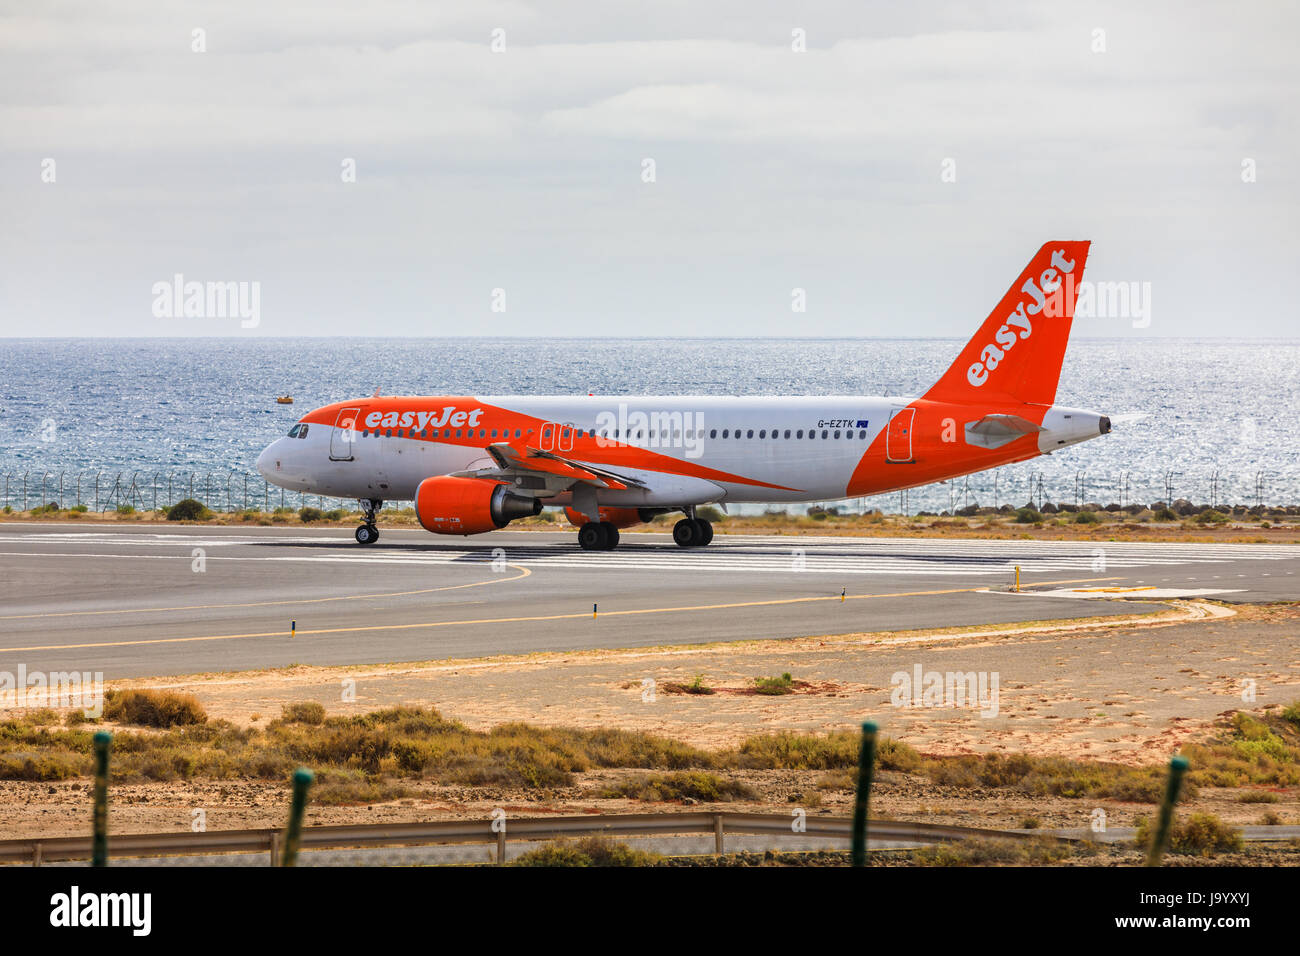 ARECIFE, Spagna - Aprile 15 2017: Airbus A320 - 200 di easyjet pronto al decollo a Lanzarote Airport Foto Stock